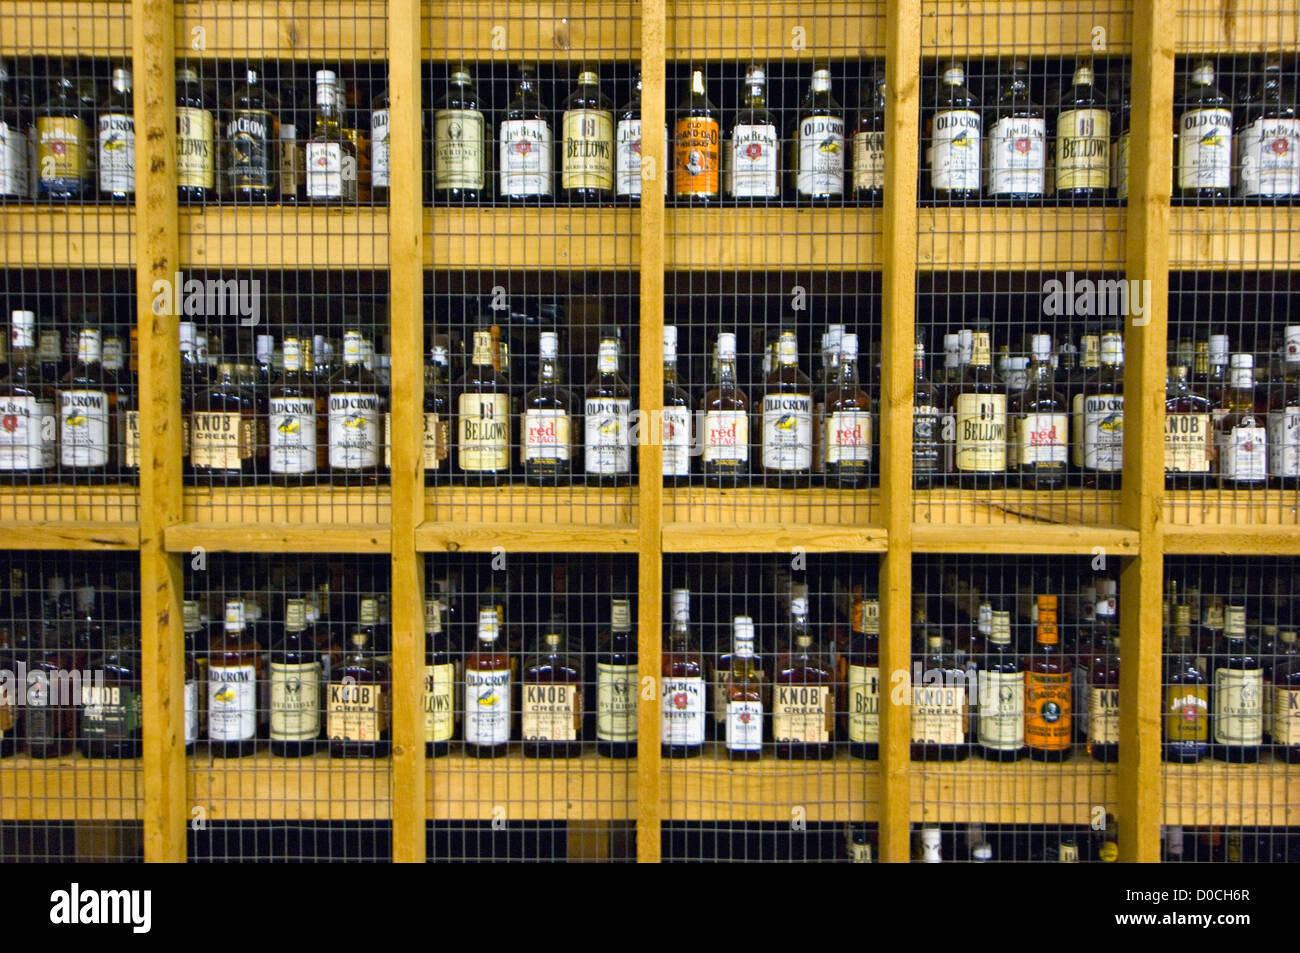 Bouteilles de whisky Bourbon prêt pour l'essai à Jim Beam Distillery in Clermont, New York Banque D'Images